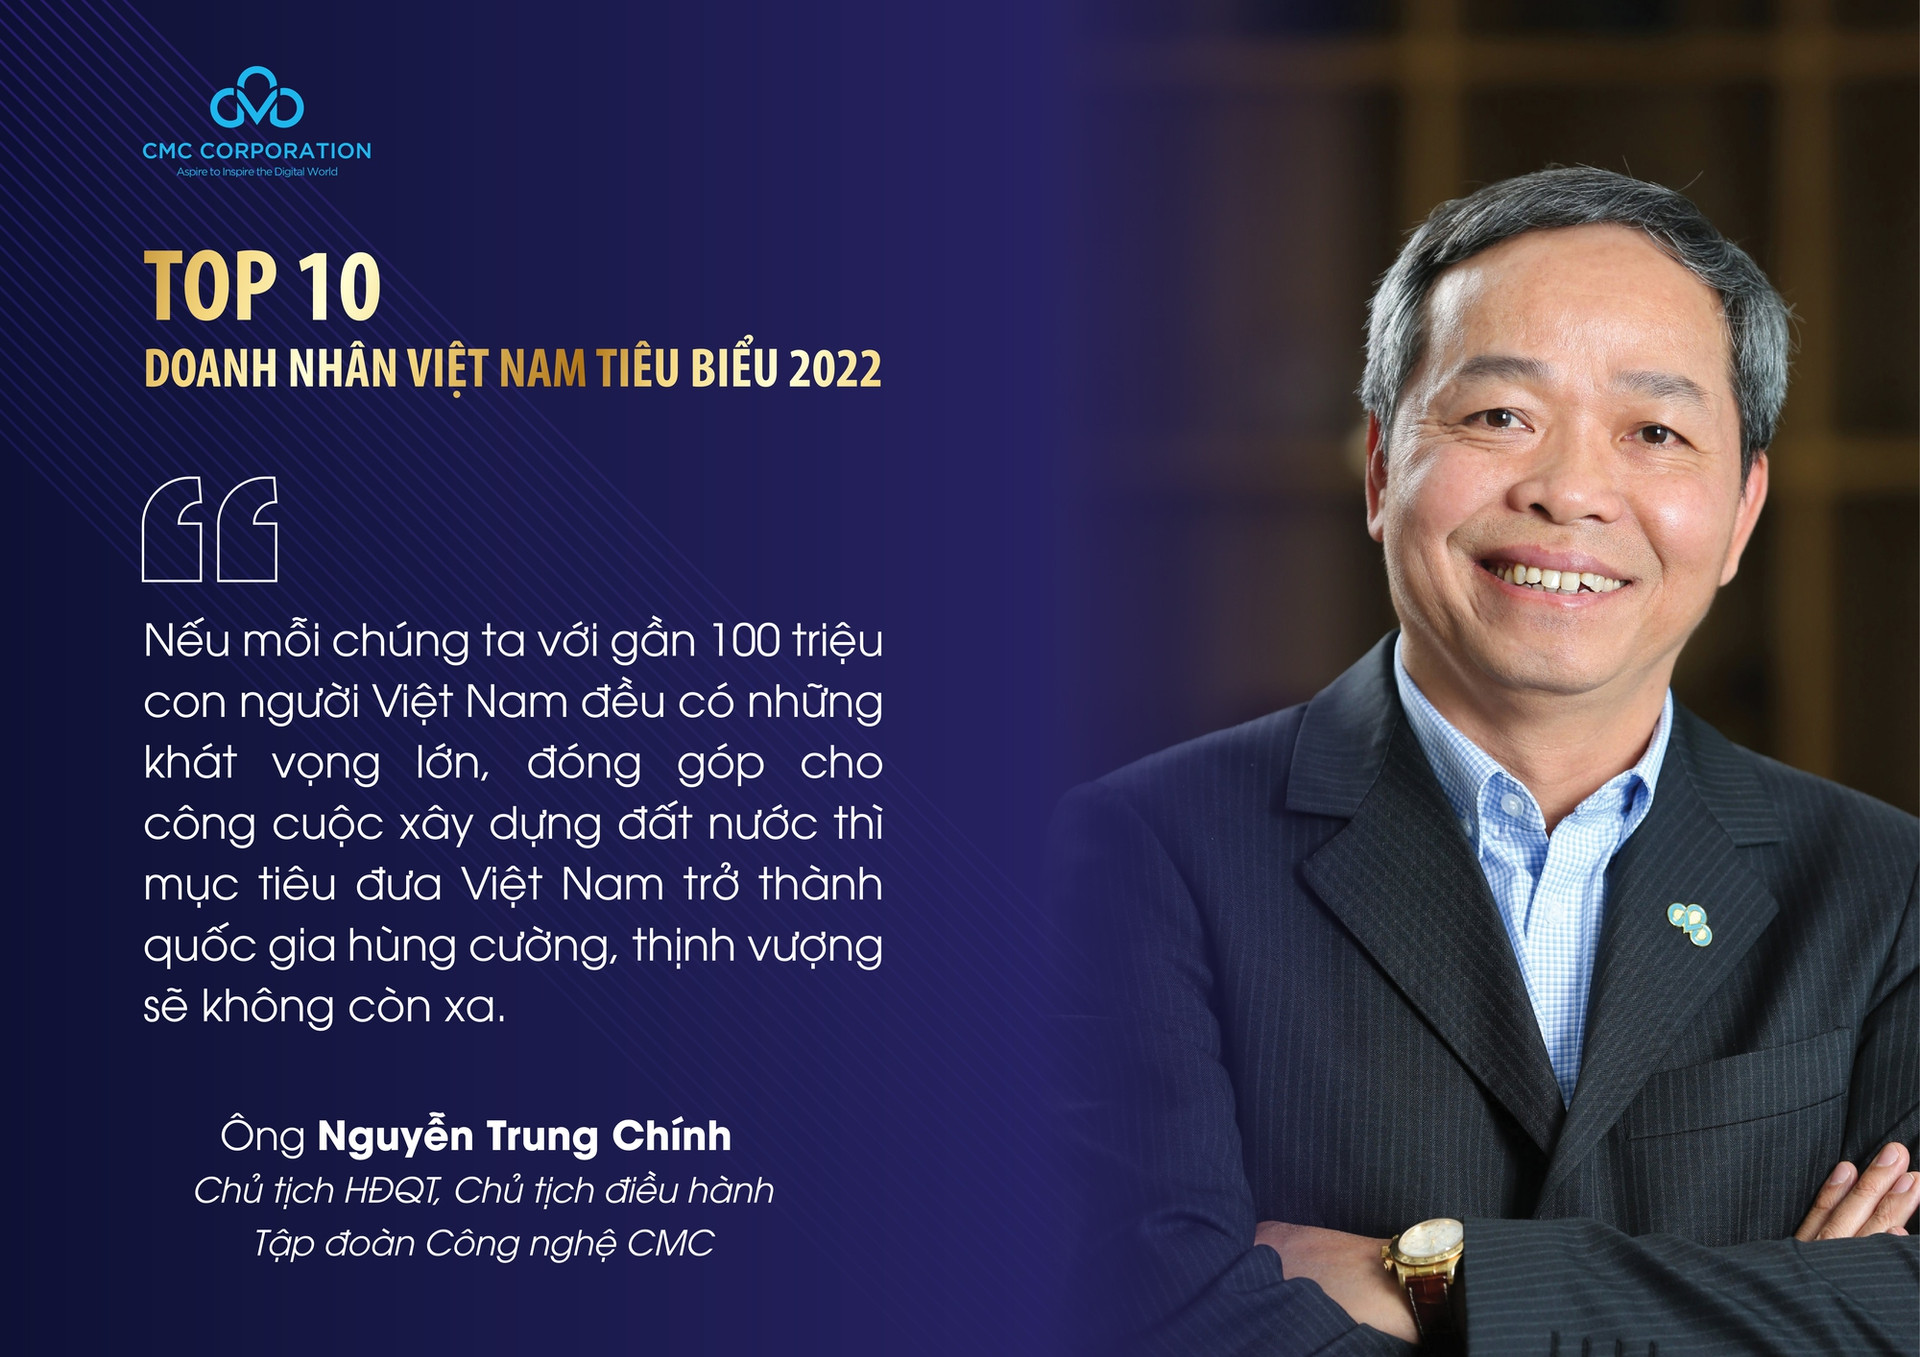 Chủ tịch CMC được vinh danh “Top 10 doanh nhân VN tiêu biểu 2022” - Ảnh 4.